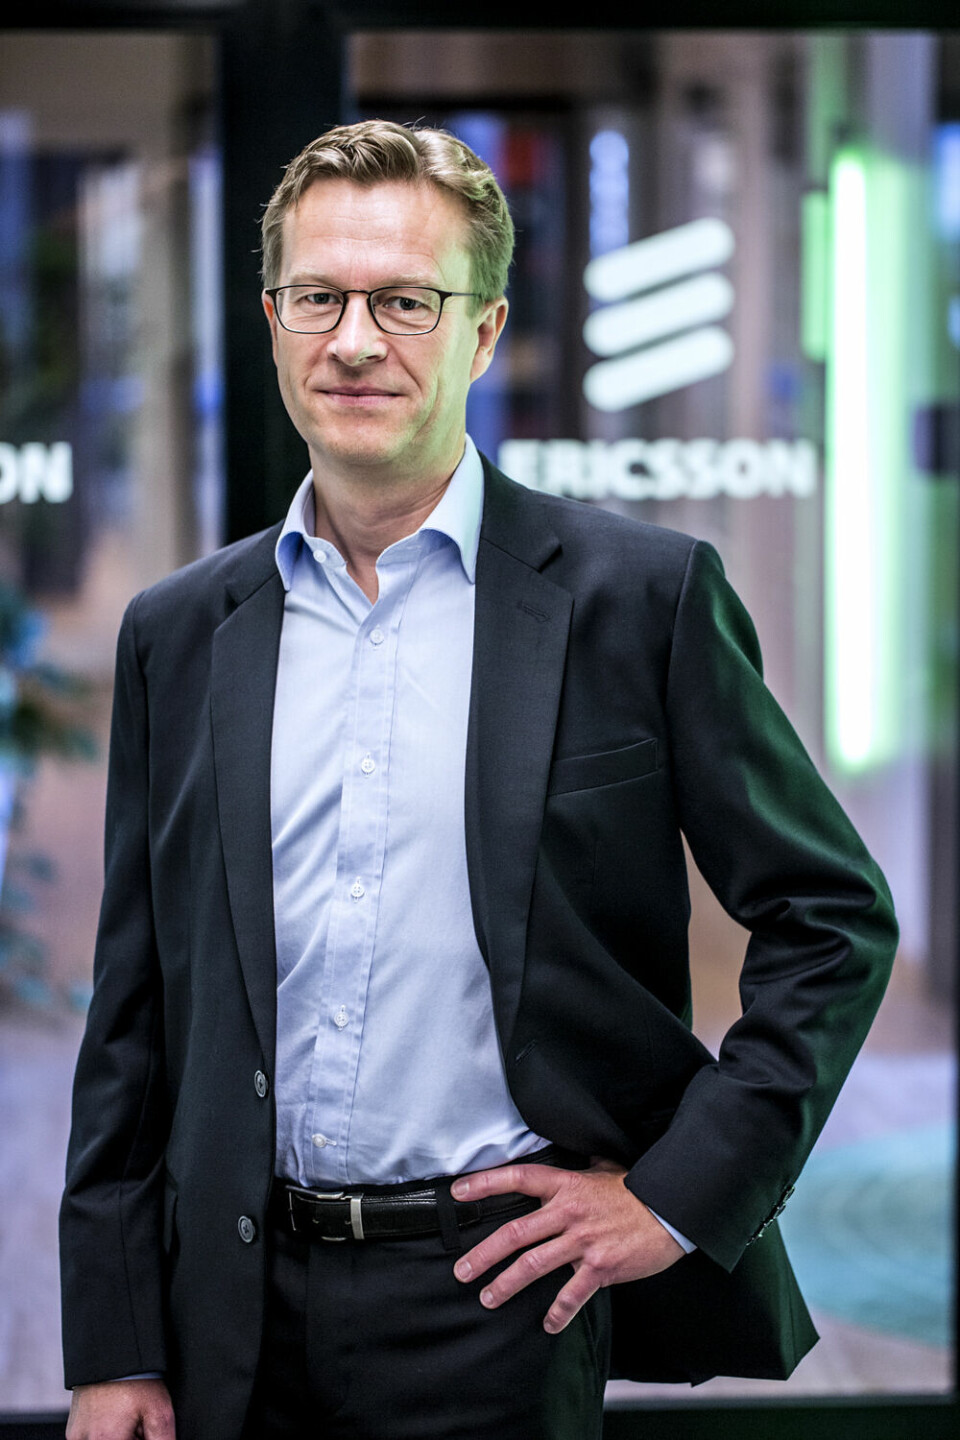 MOBILVIDEO: - I Europa ser vi i snitt video på smarttelefonen fire timer hver uke, konstaterer Aksel Aanensen, adm. direktør i Ericsson Norge. Foto: Ericsson